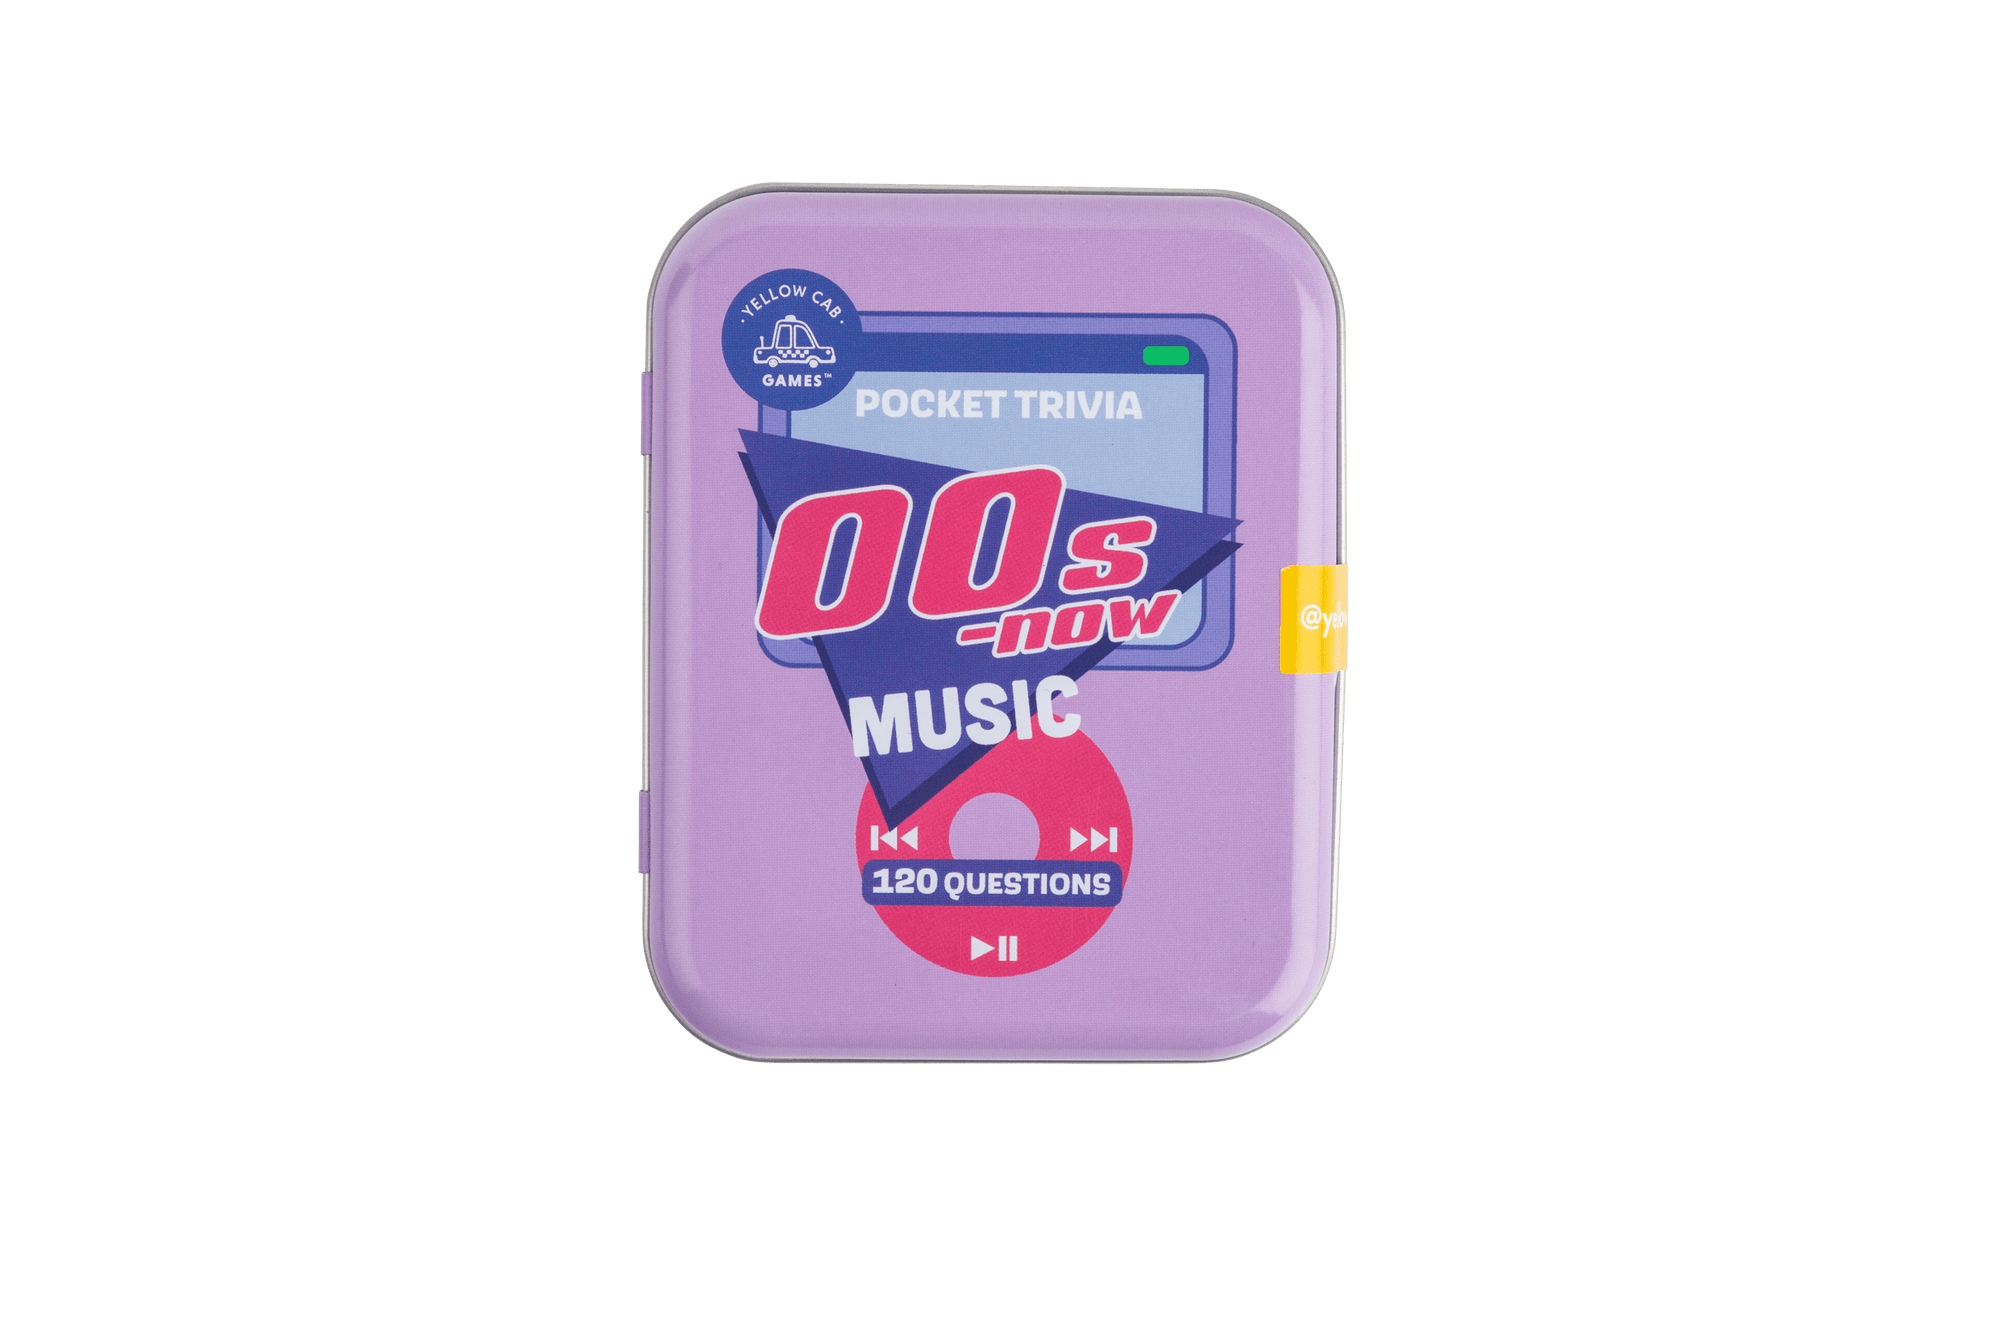 00s Music Pocket Trivia